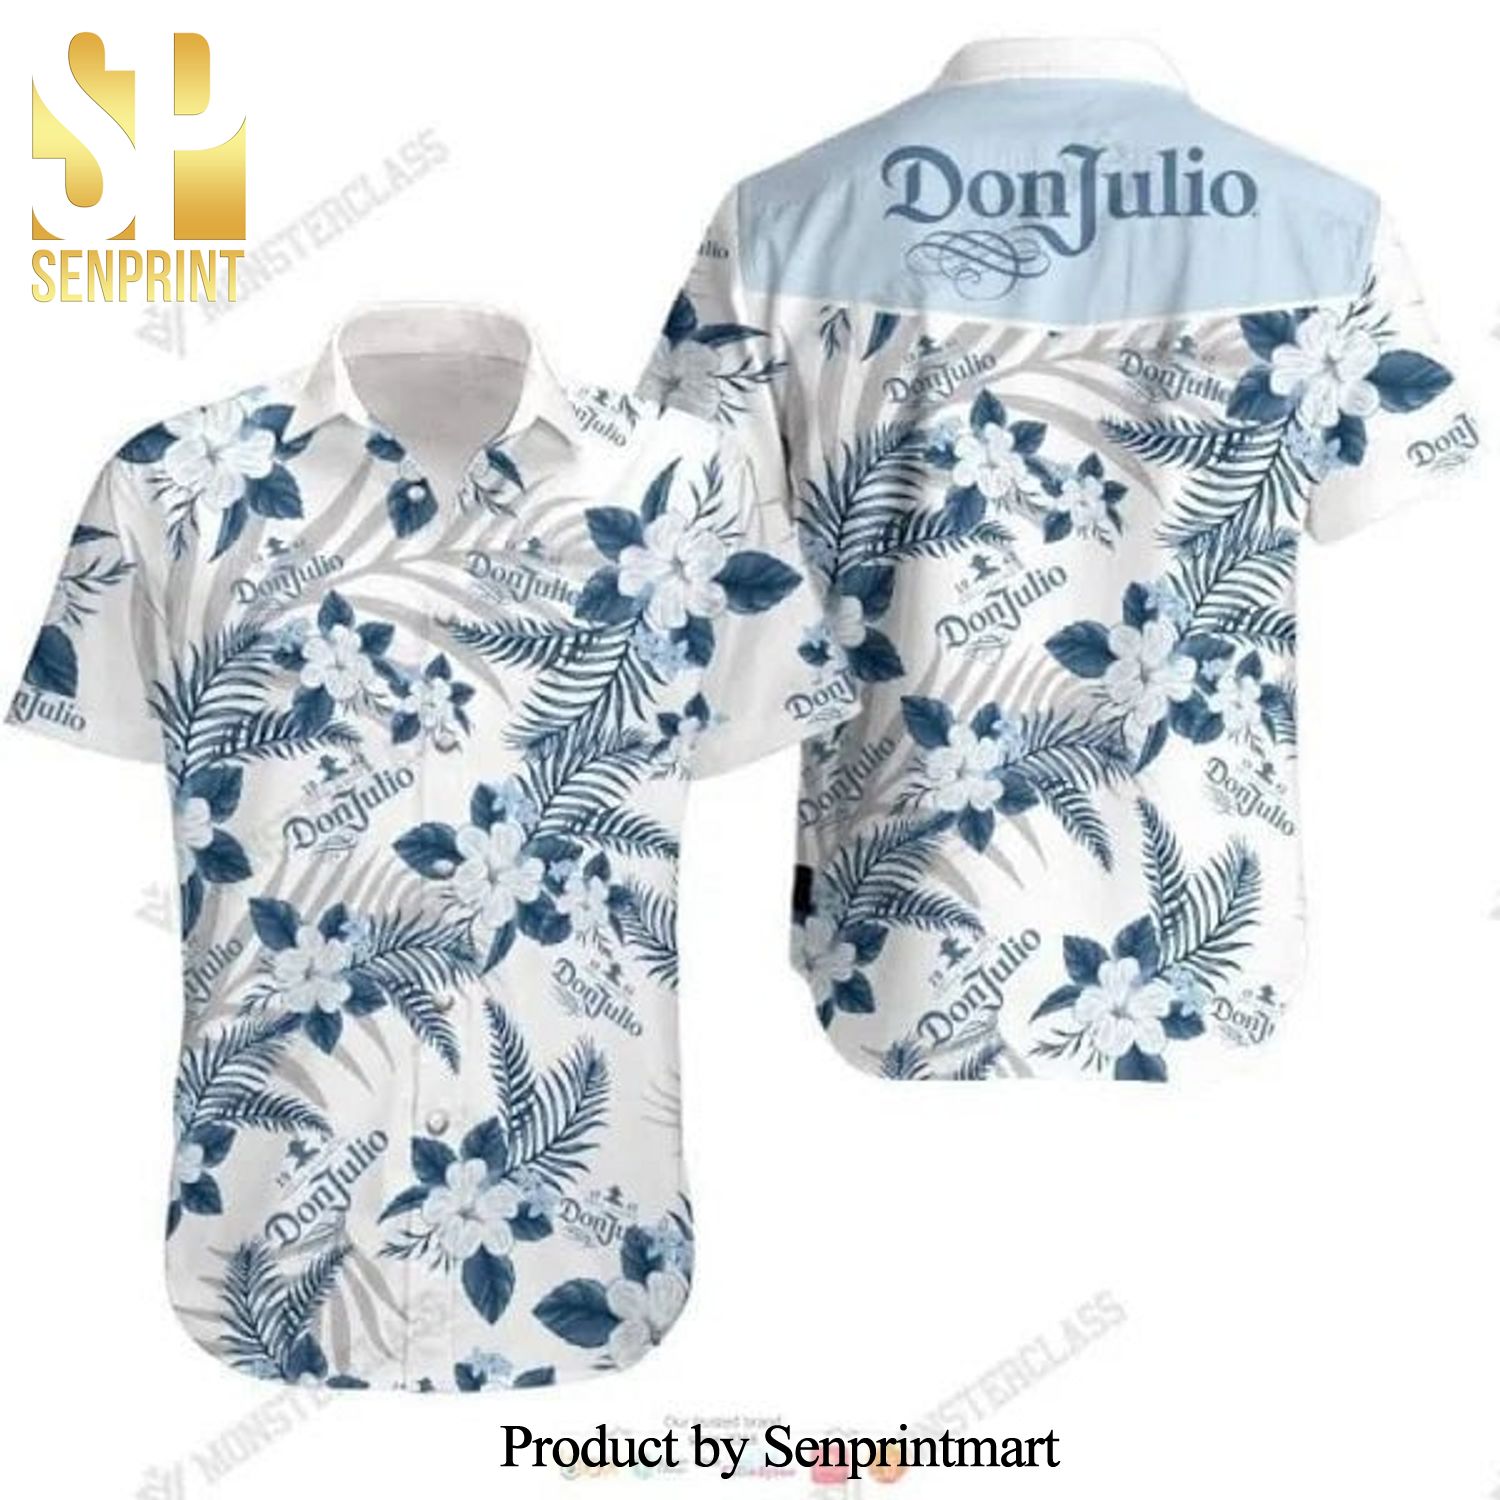 Don Julio Tequila Hot Fashion Hawaiian Shirt